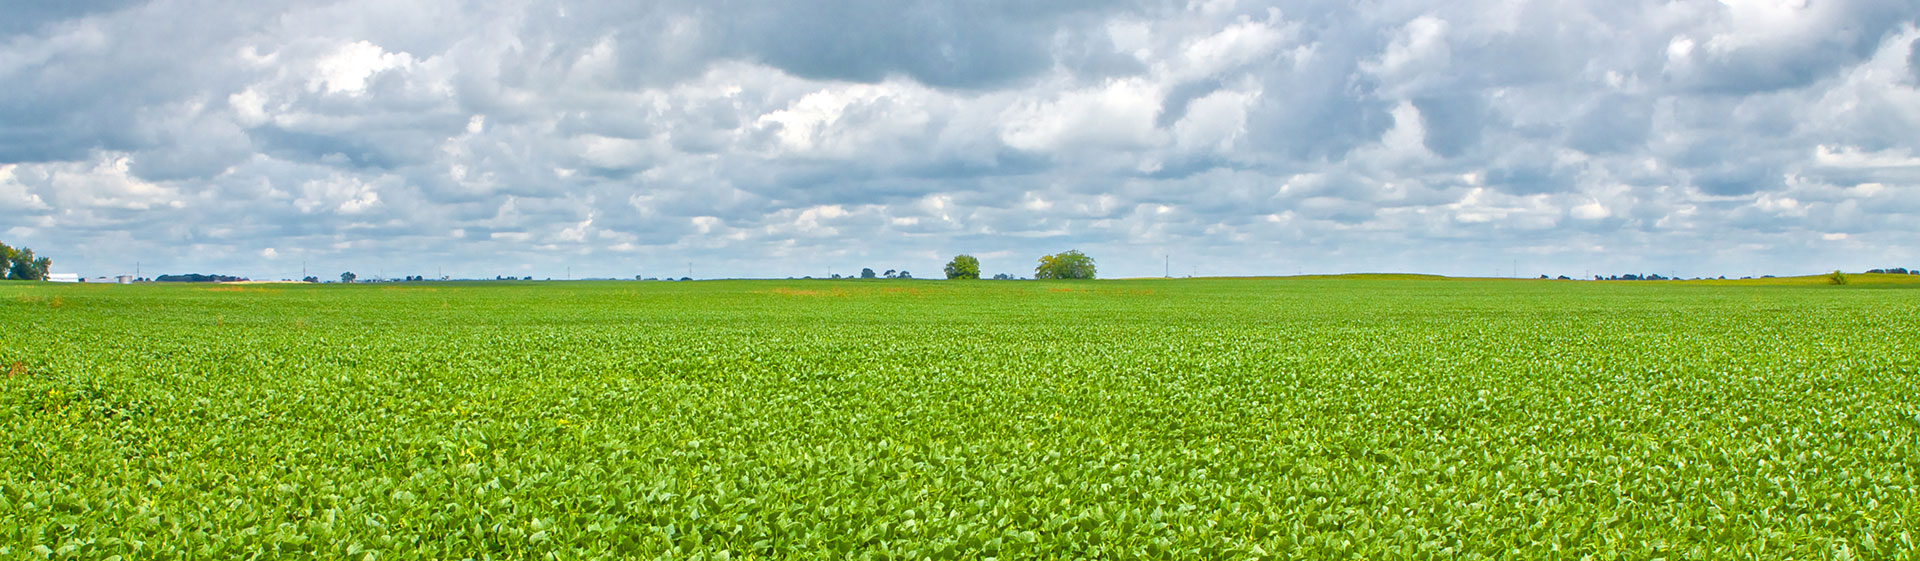 Soybean field, Illinois